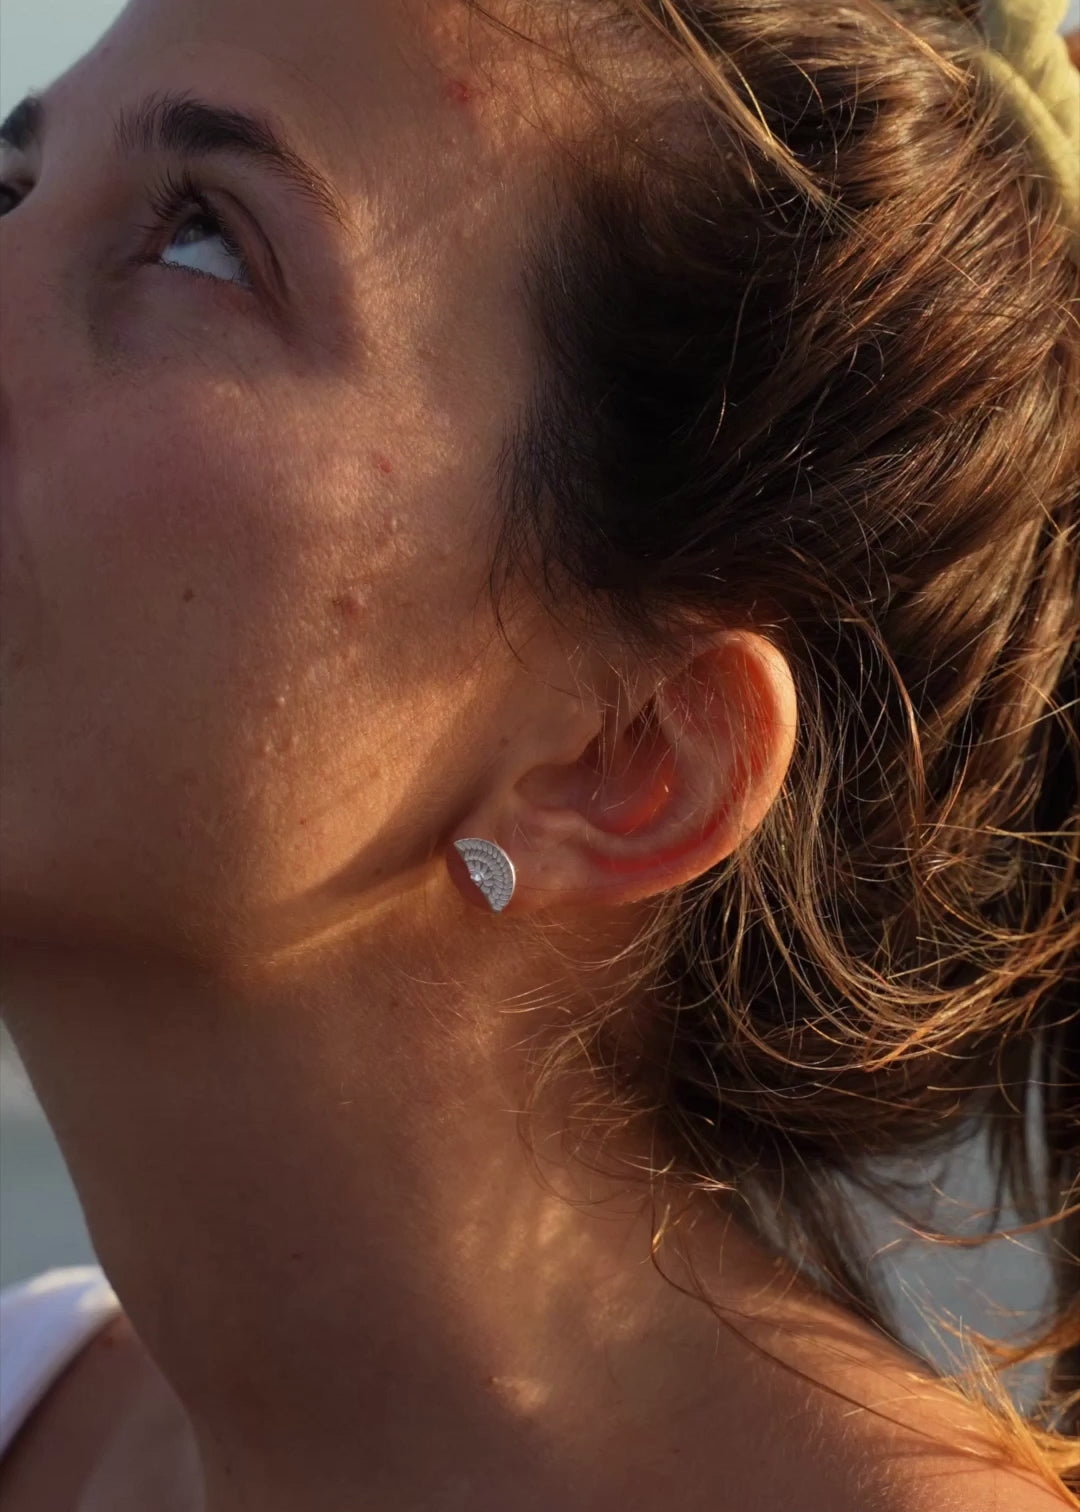 Handgemachte Ohrringe aus Bali | Geschenk mit Bedeutung für Freundin | Ohrstecker aus Silber | Wasserfester Schmuck von VERLAN Jewellery